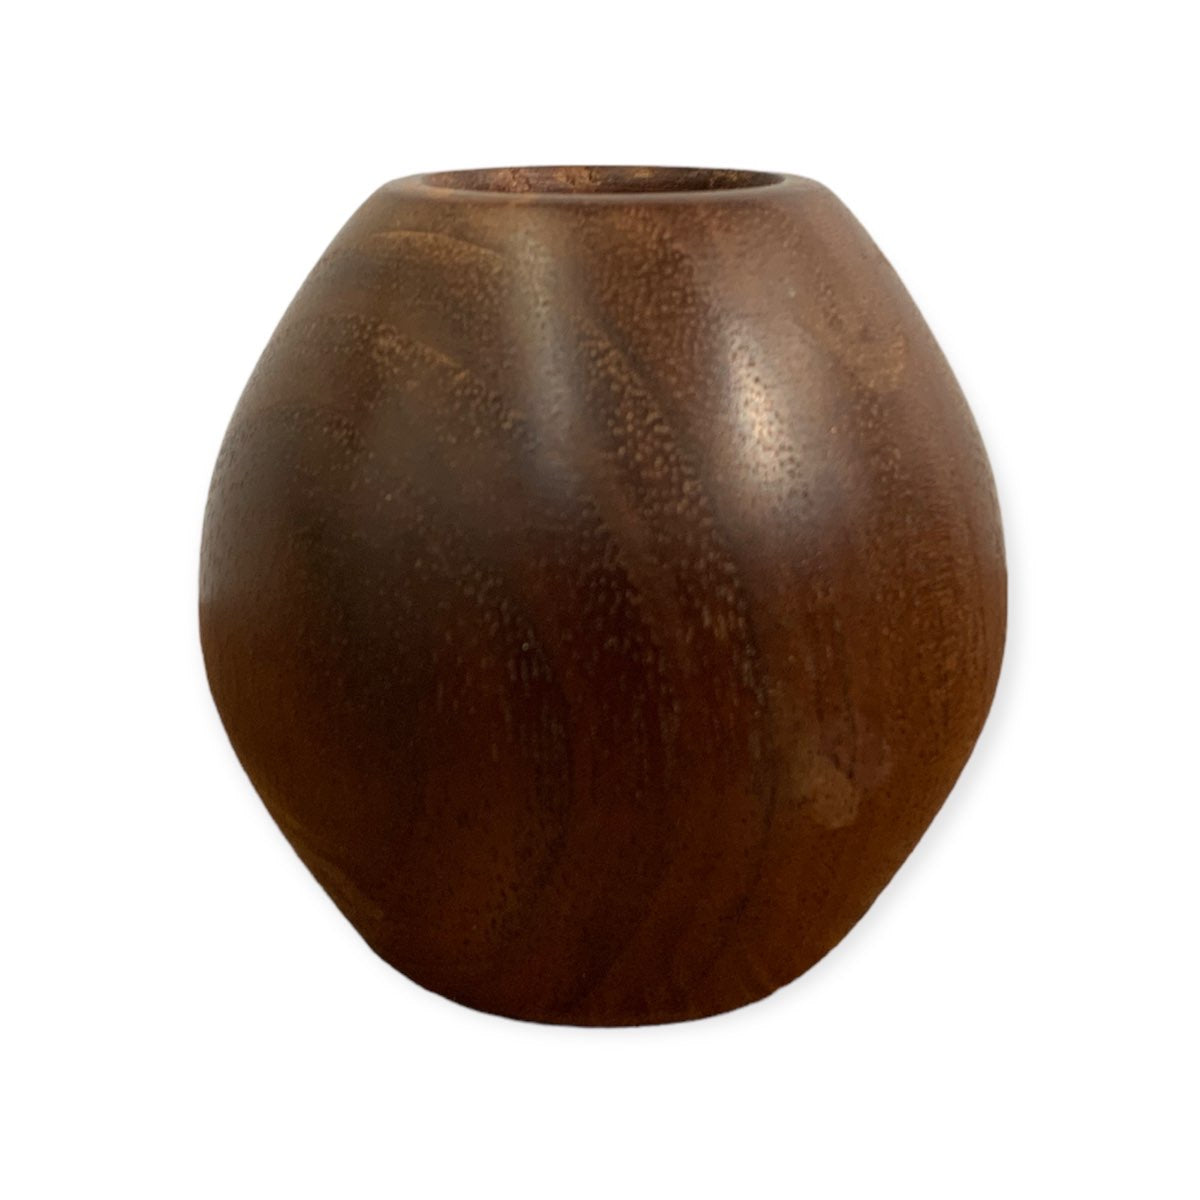 Tiny Wood Vase - Walnut by Jon Van Der Nol